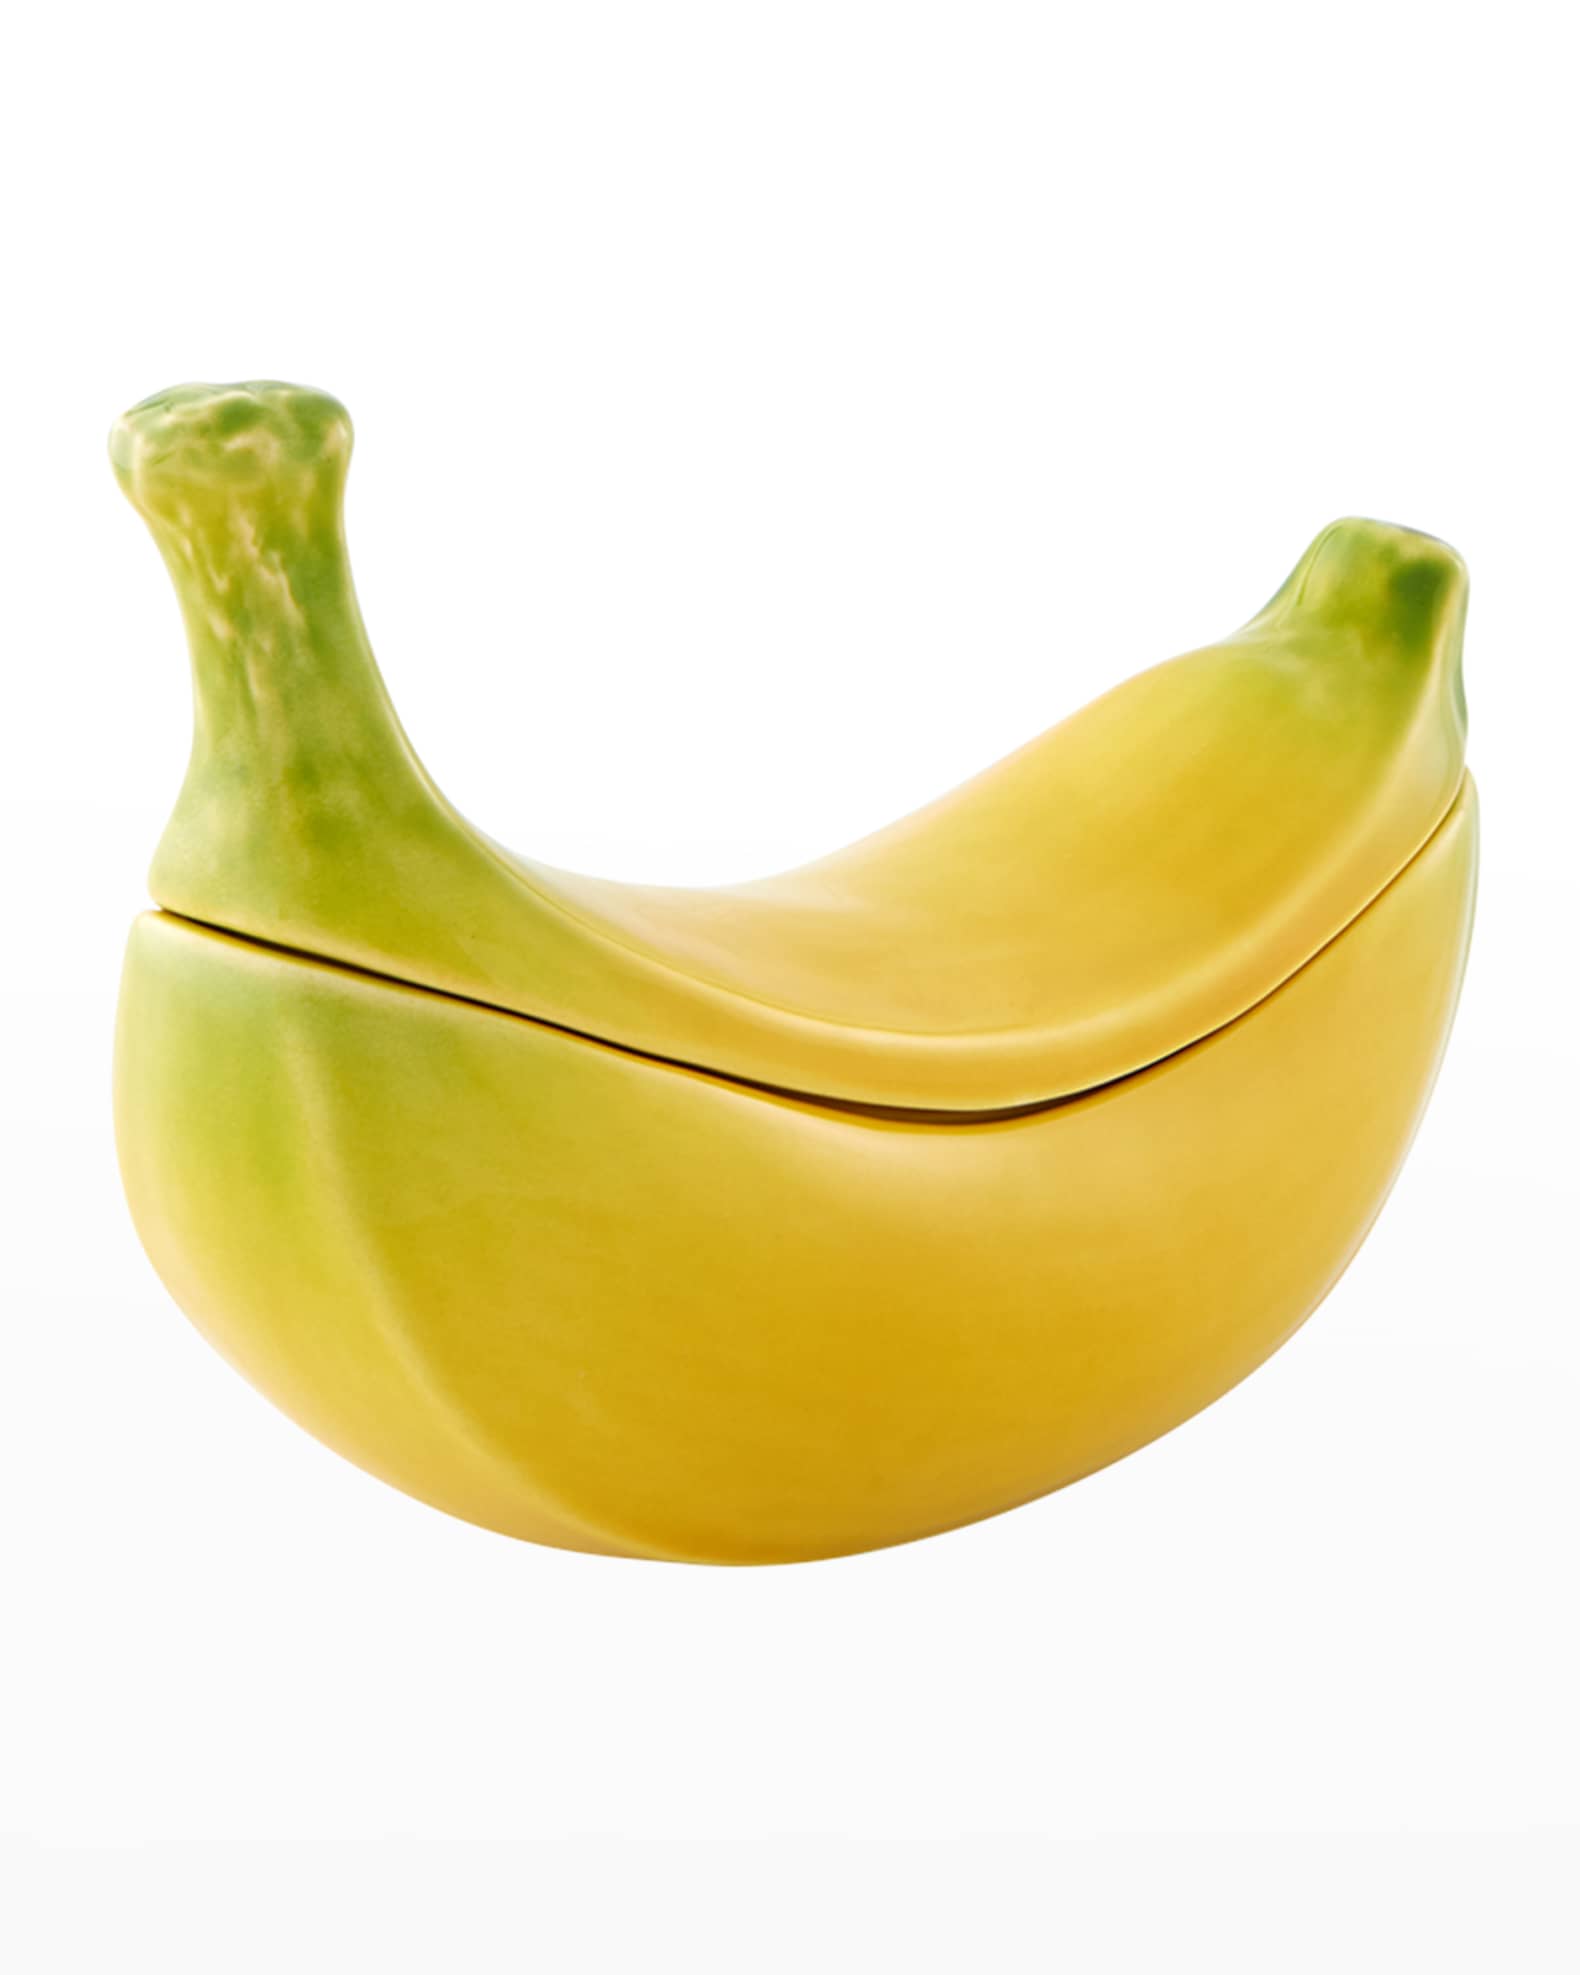 Bordallo Pinheiro Madeira Bananas Centerpiece